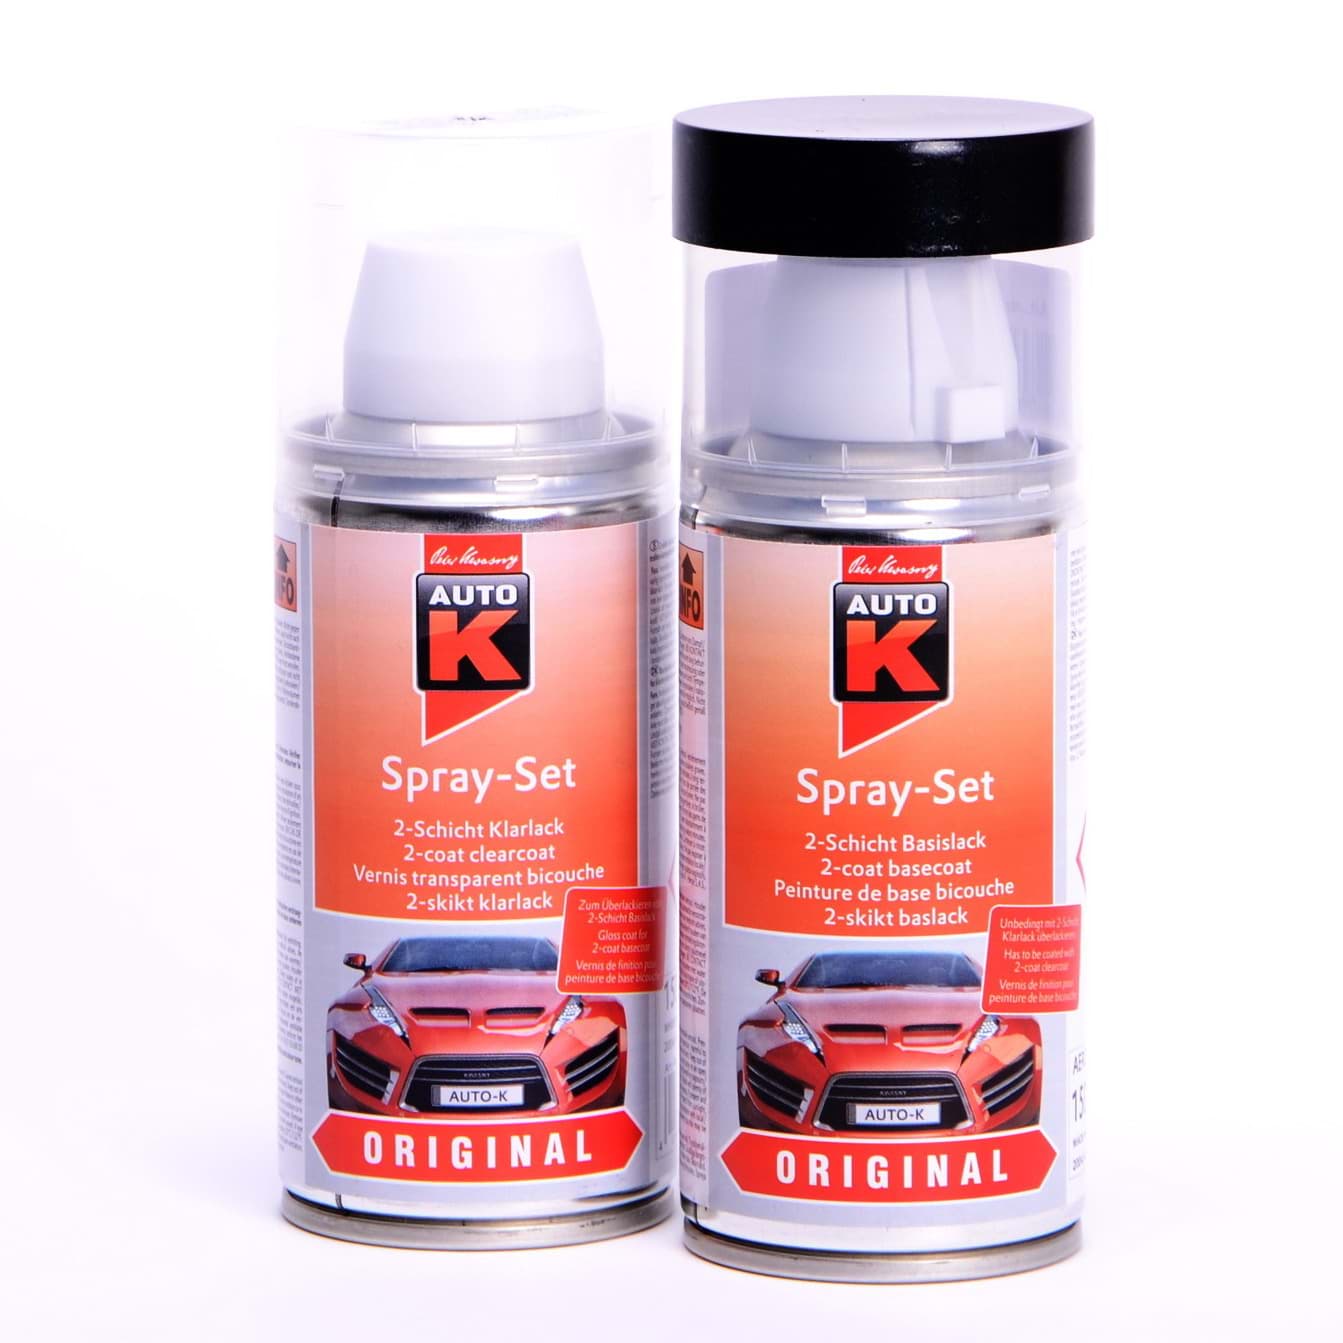 Afbeelding van Auto-K Spray-Set Autolack für BMW 308 Brillantrot 27241